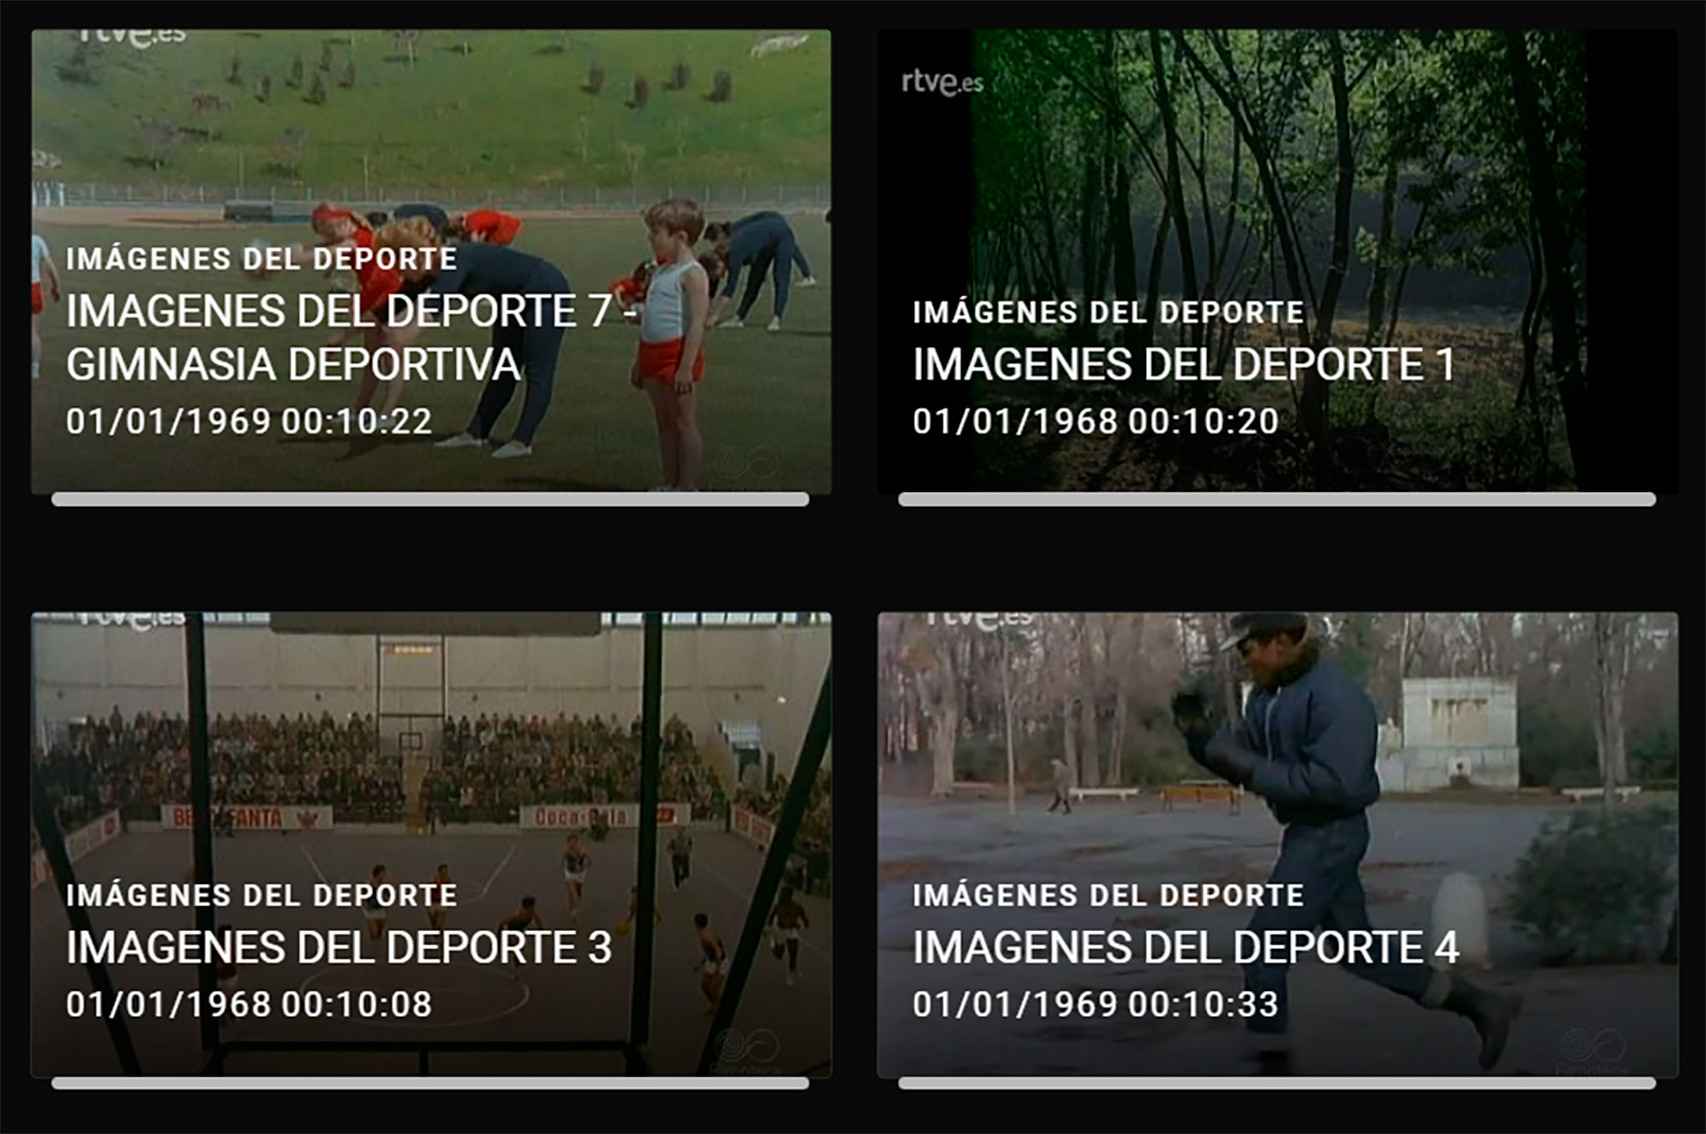 La plataforma permitirá el acceso a la Filmoteca Española